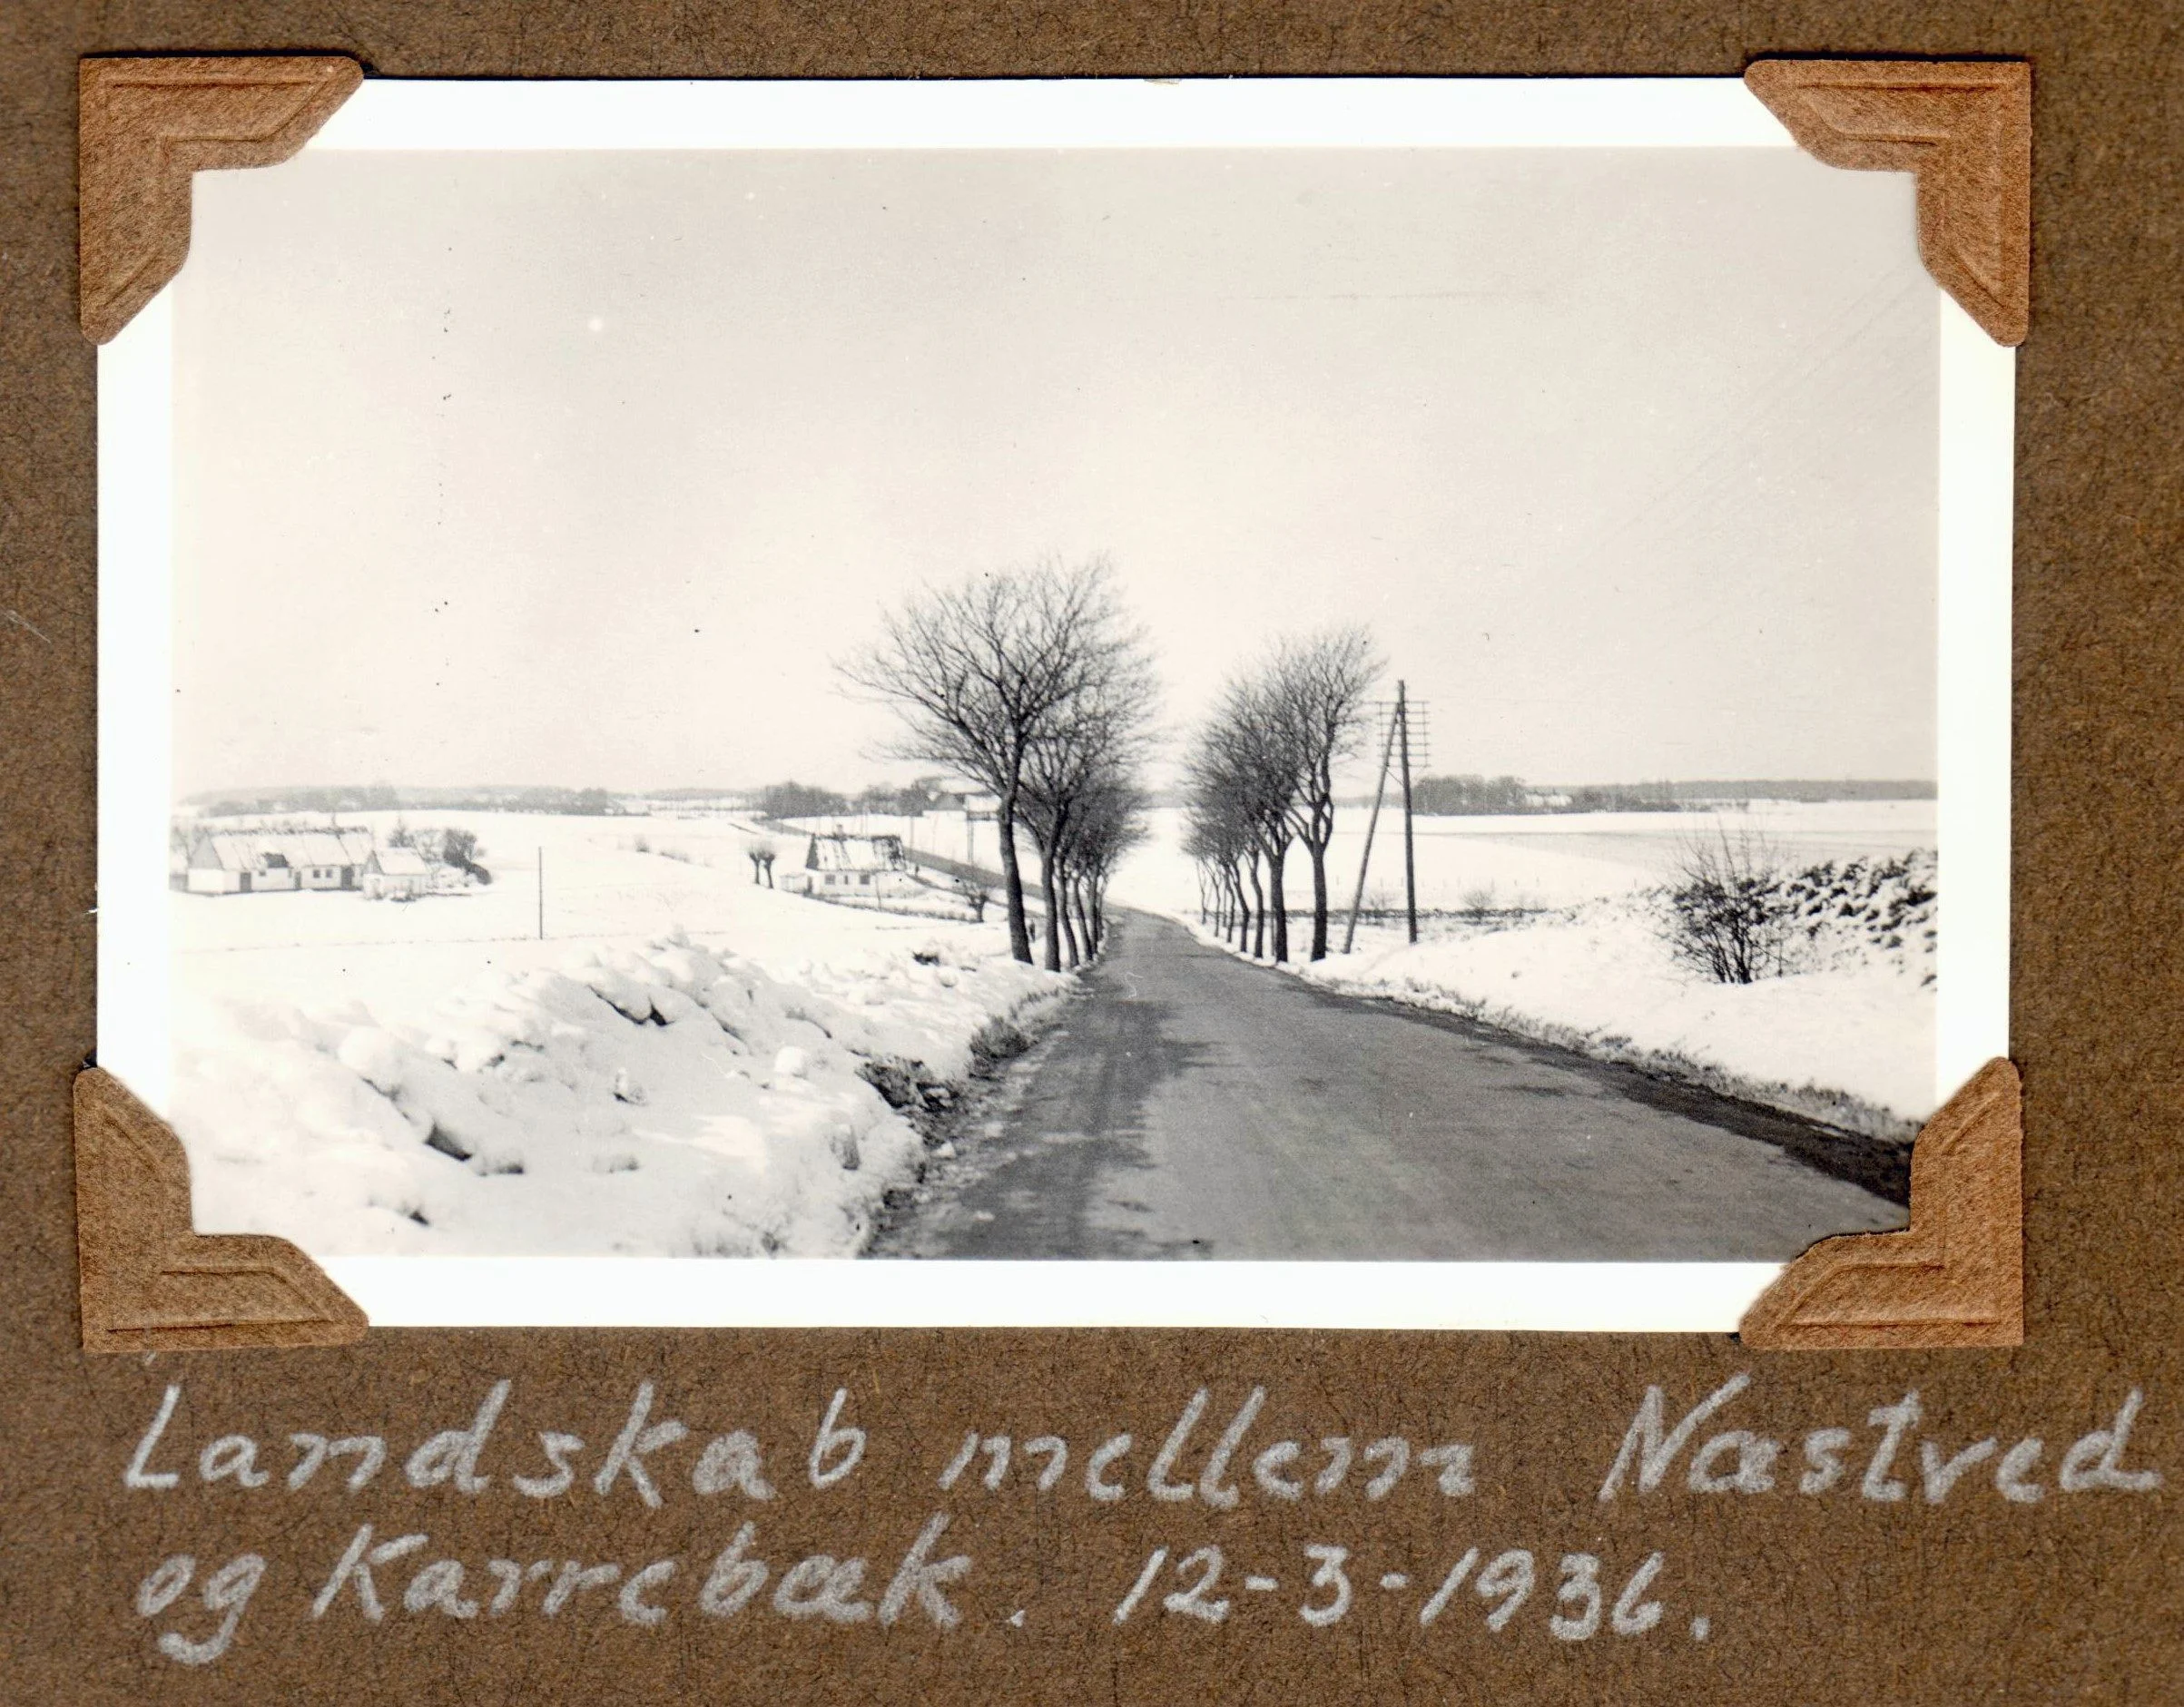 70.96 Landevejen mellem Karrebækog Næstved 1936. FB 4.8.2021